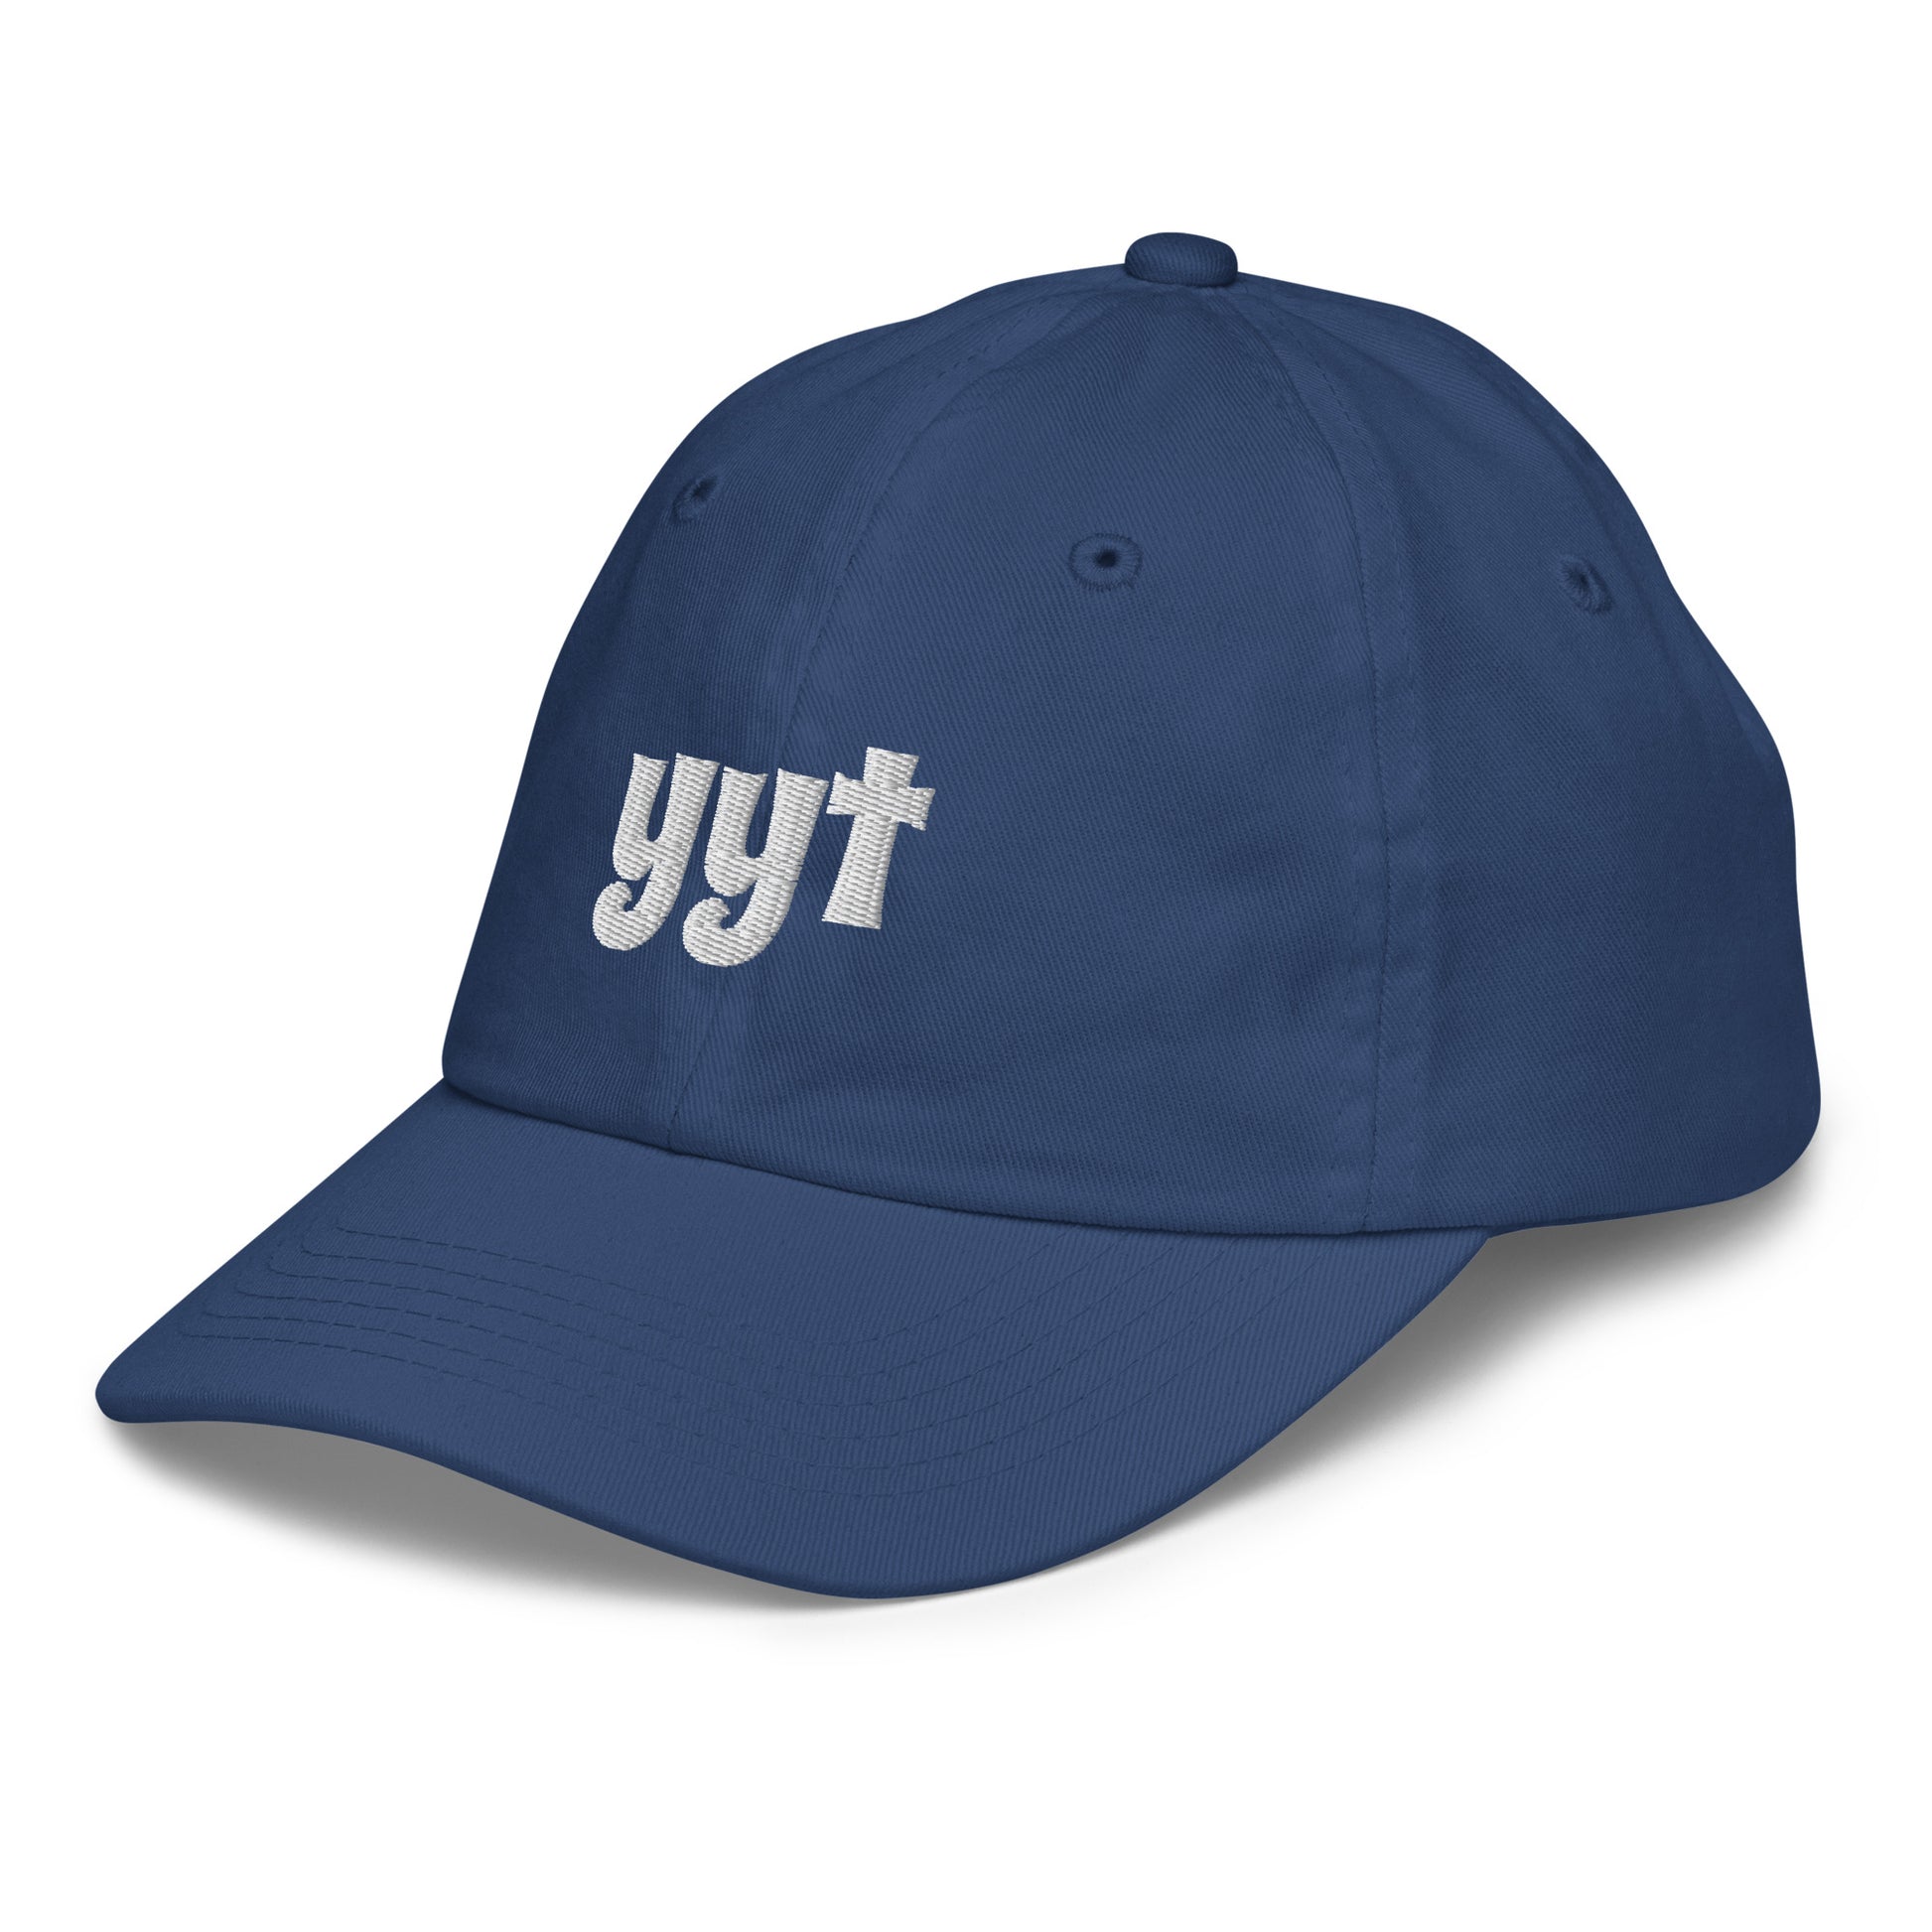 Groovy Kid's Baseball Cap - White • YYT St. John's • YHM Designs - Image 16